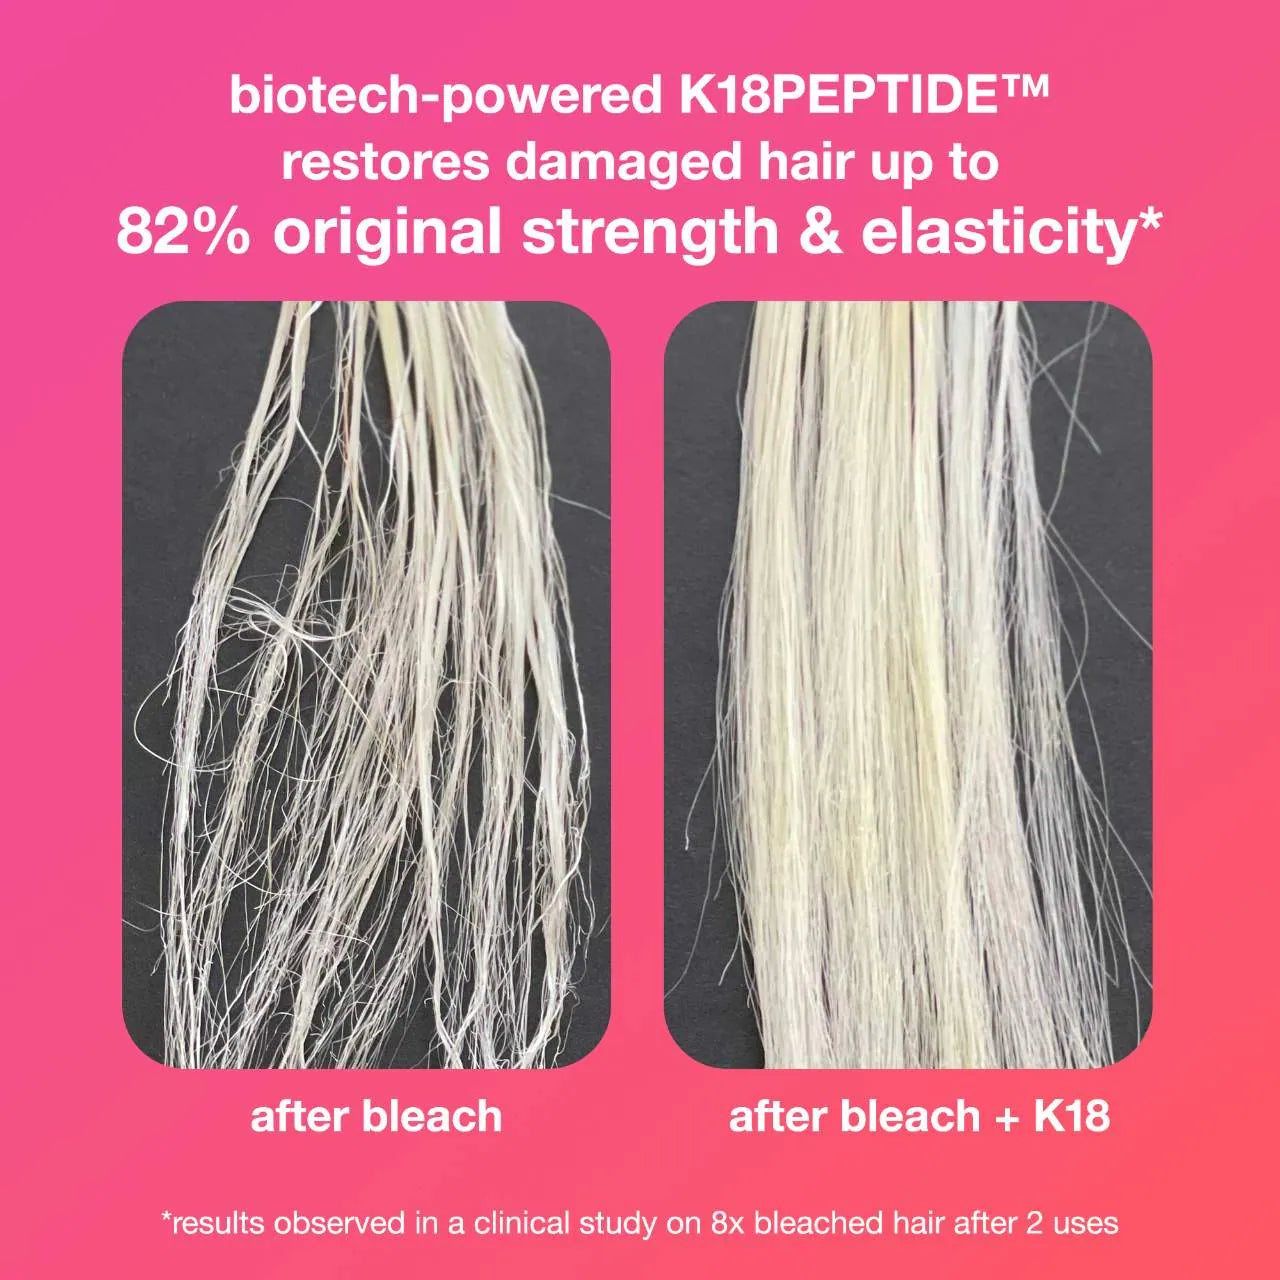 K18 Biomimetic Hairscience - Detox + Repair Anywhere Set